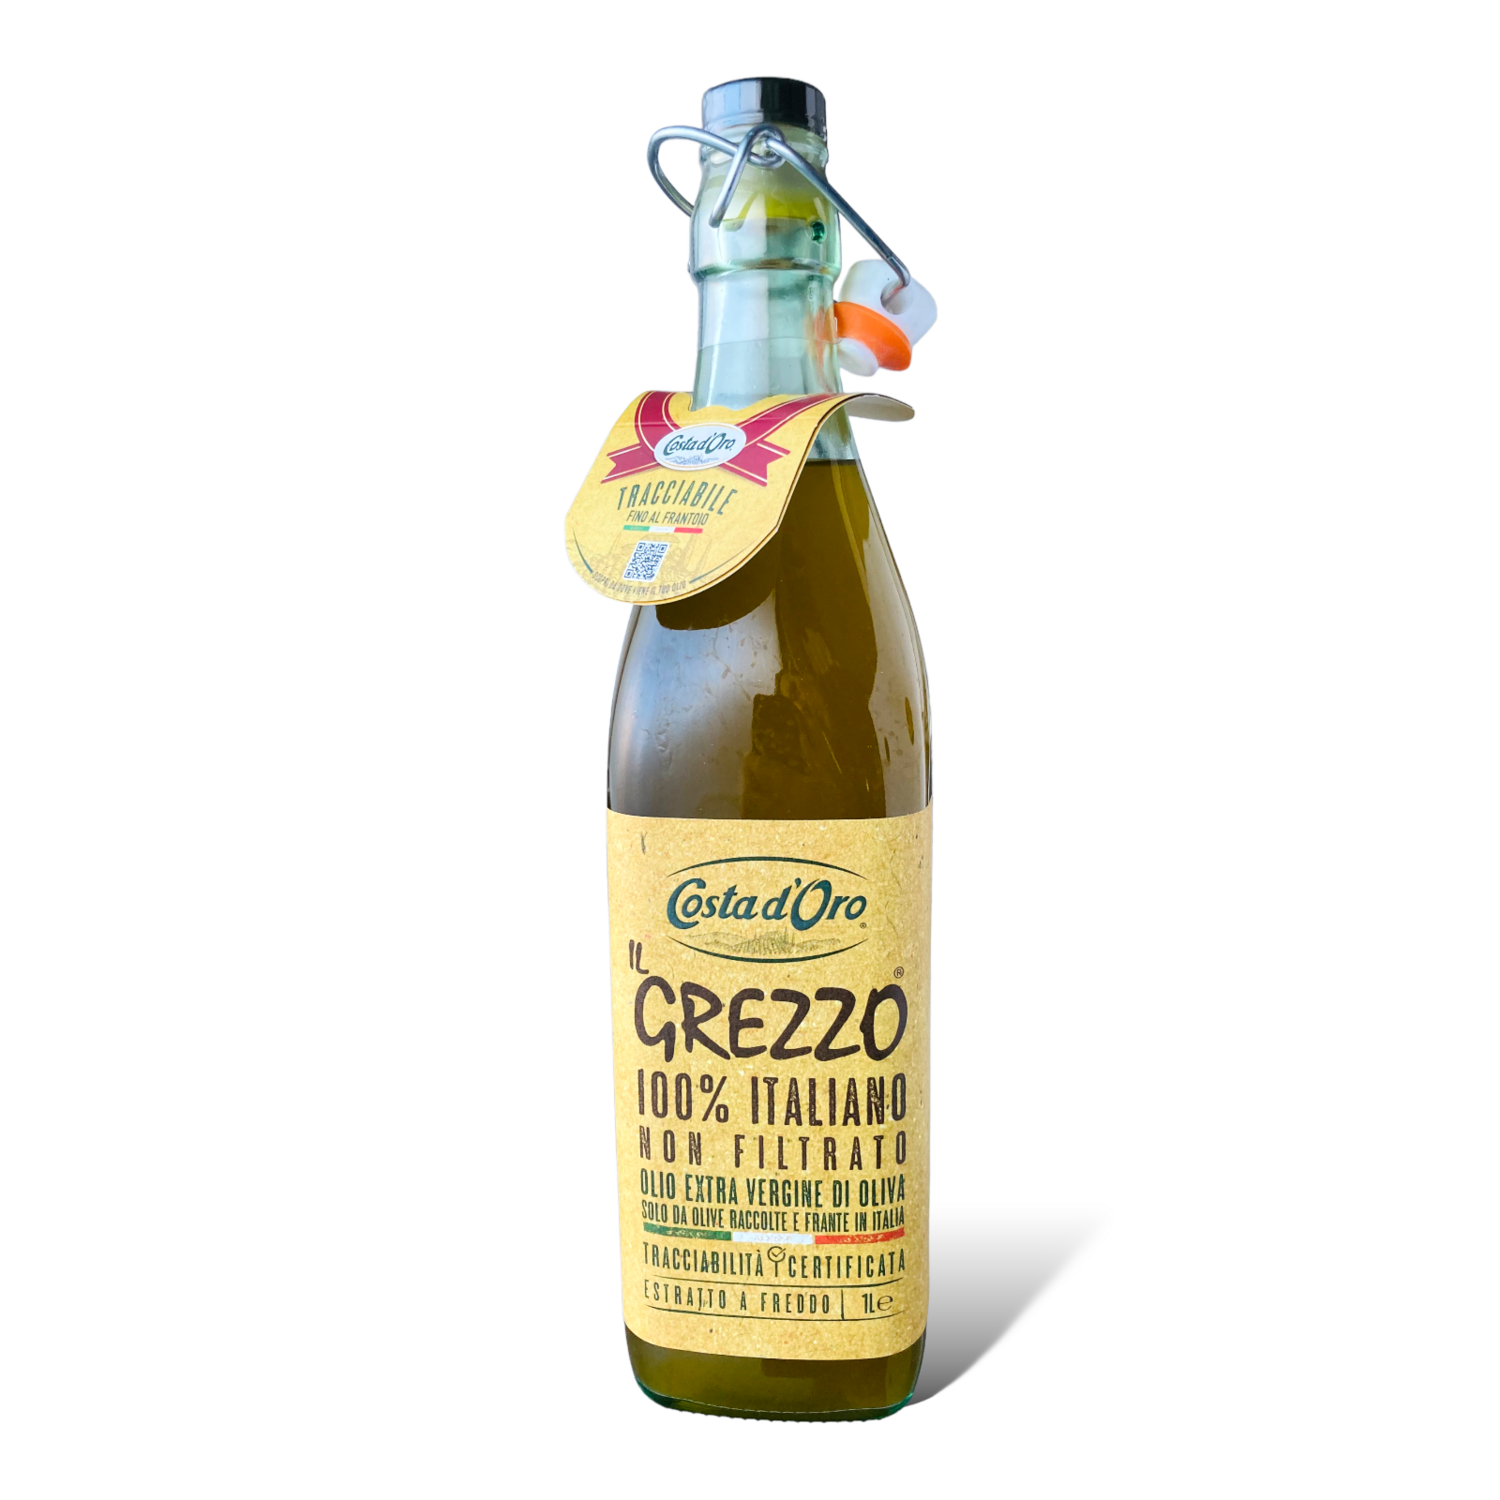 Olio Extra Vergine d'Oliva Costa d'Oro IL GREZZO 100% Italiano non Filtrato  Estratto a Freddo bottiglia da 1 litro